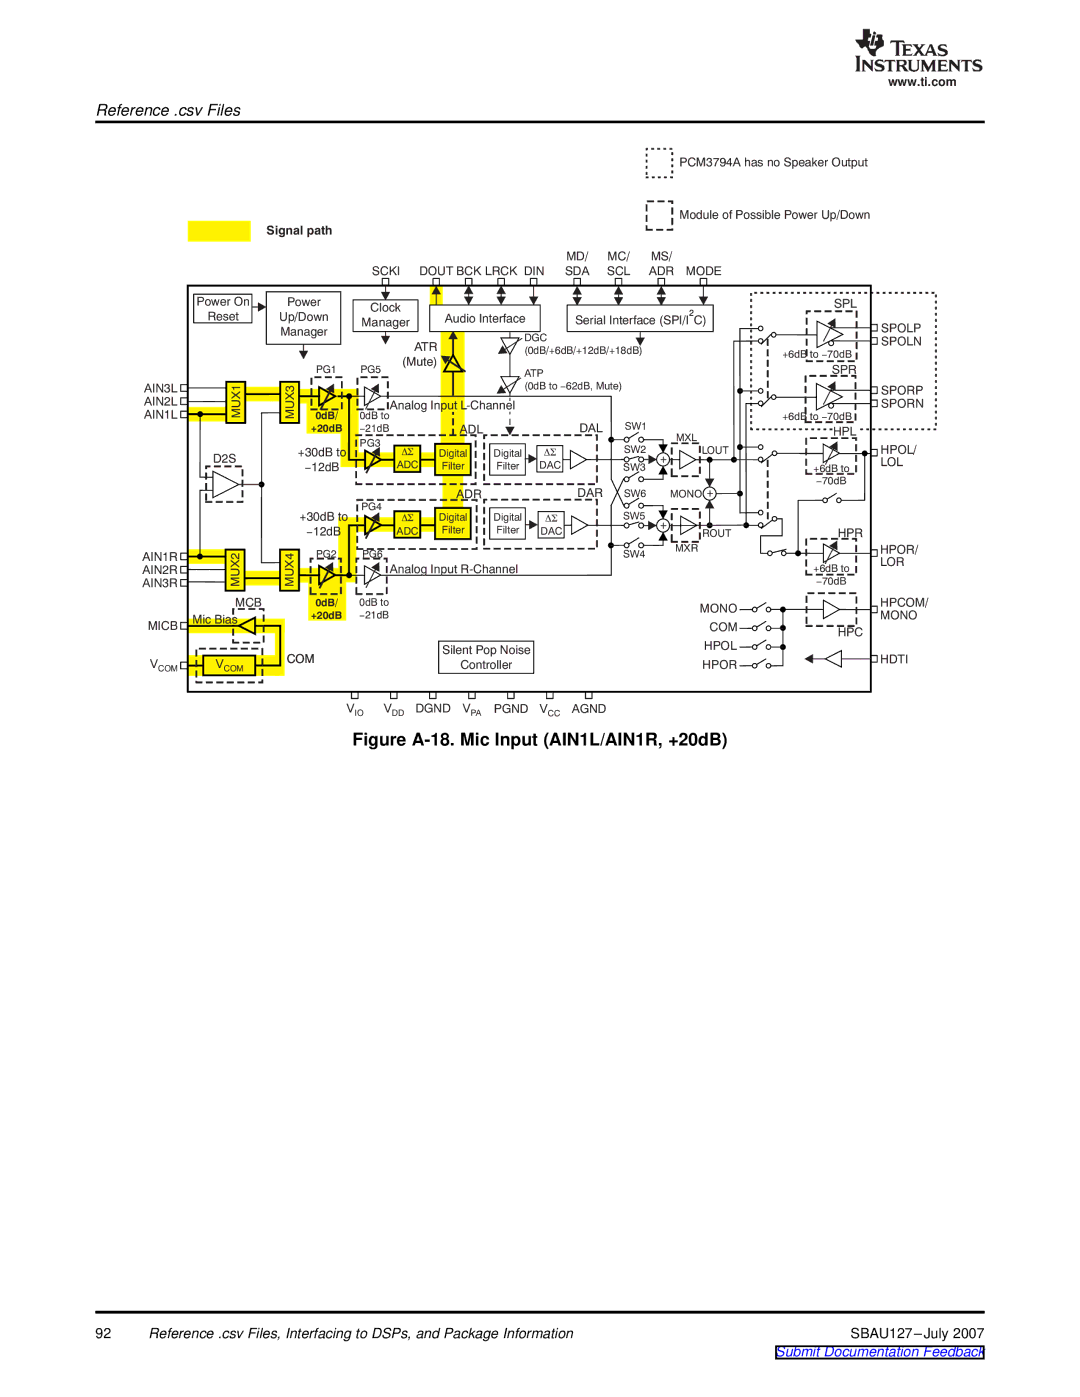 Texas Instruments DEM-DAI3793A manual Figure A-18. Mic Input AIN1L/AIN1R, +20dB 